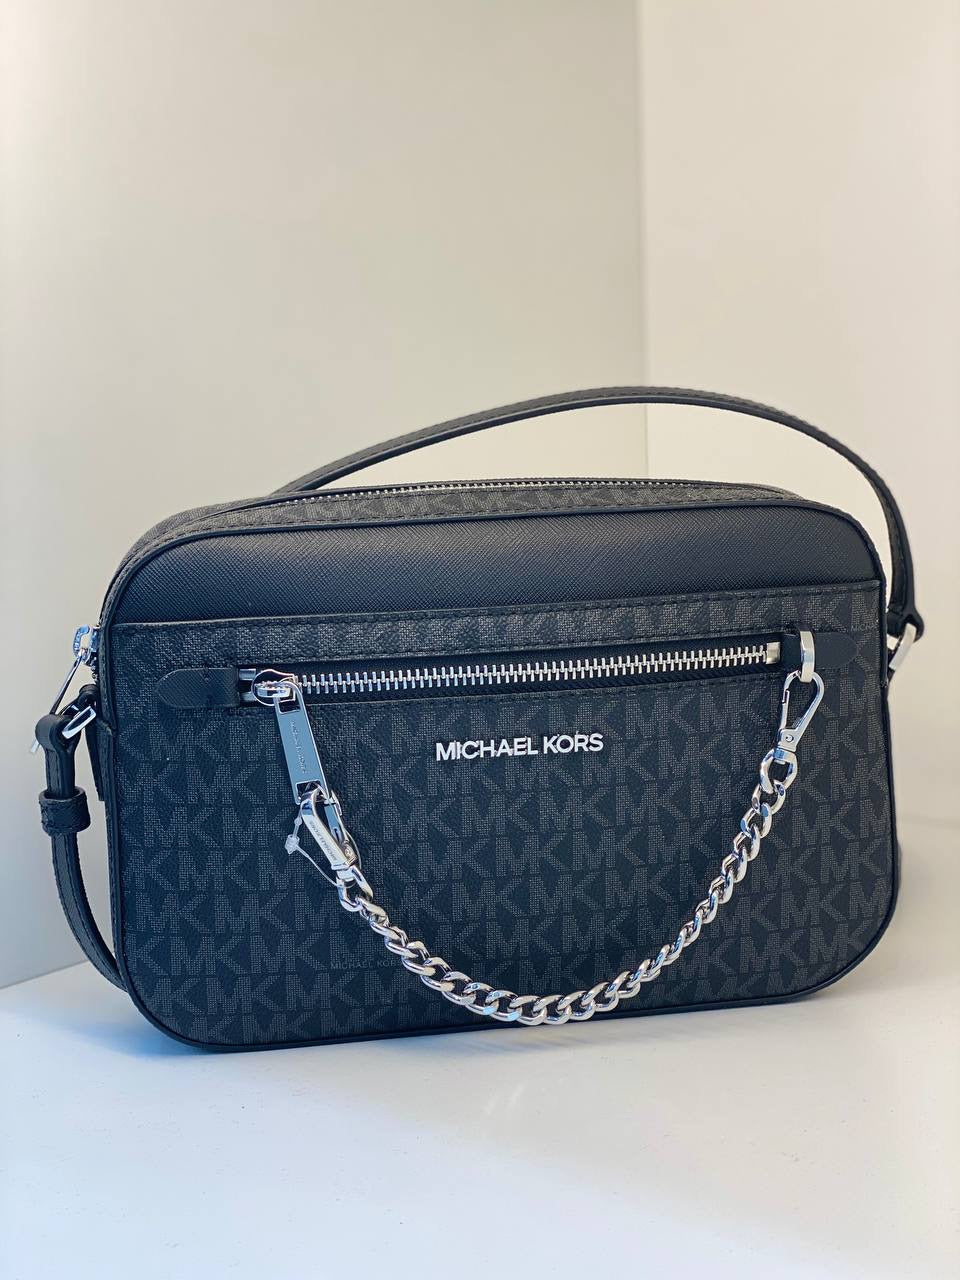 Michael Kors Charlotte Leather Shoulder Tote Purse Handbag Vista Blue +  Wallet | eBay